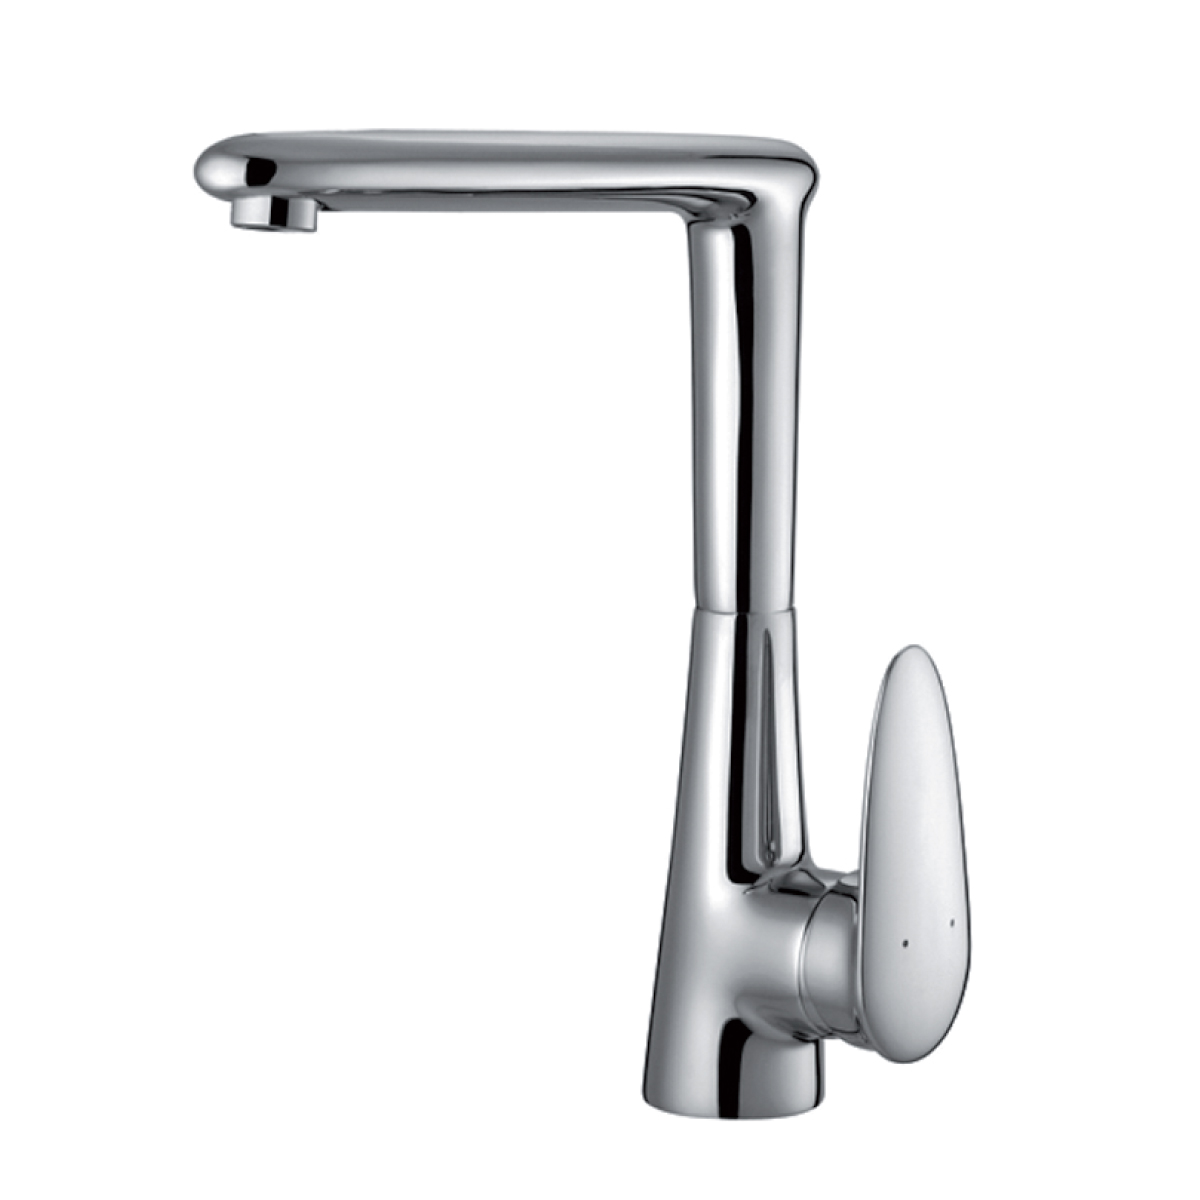 LM4405C Kitchen faucet
with swivel spout